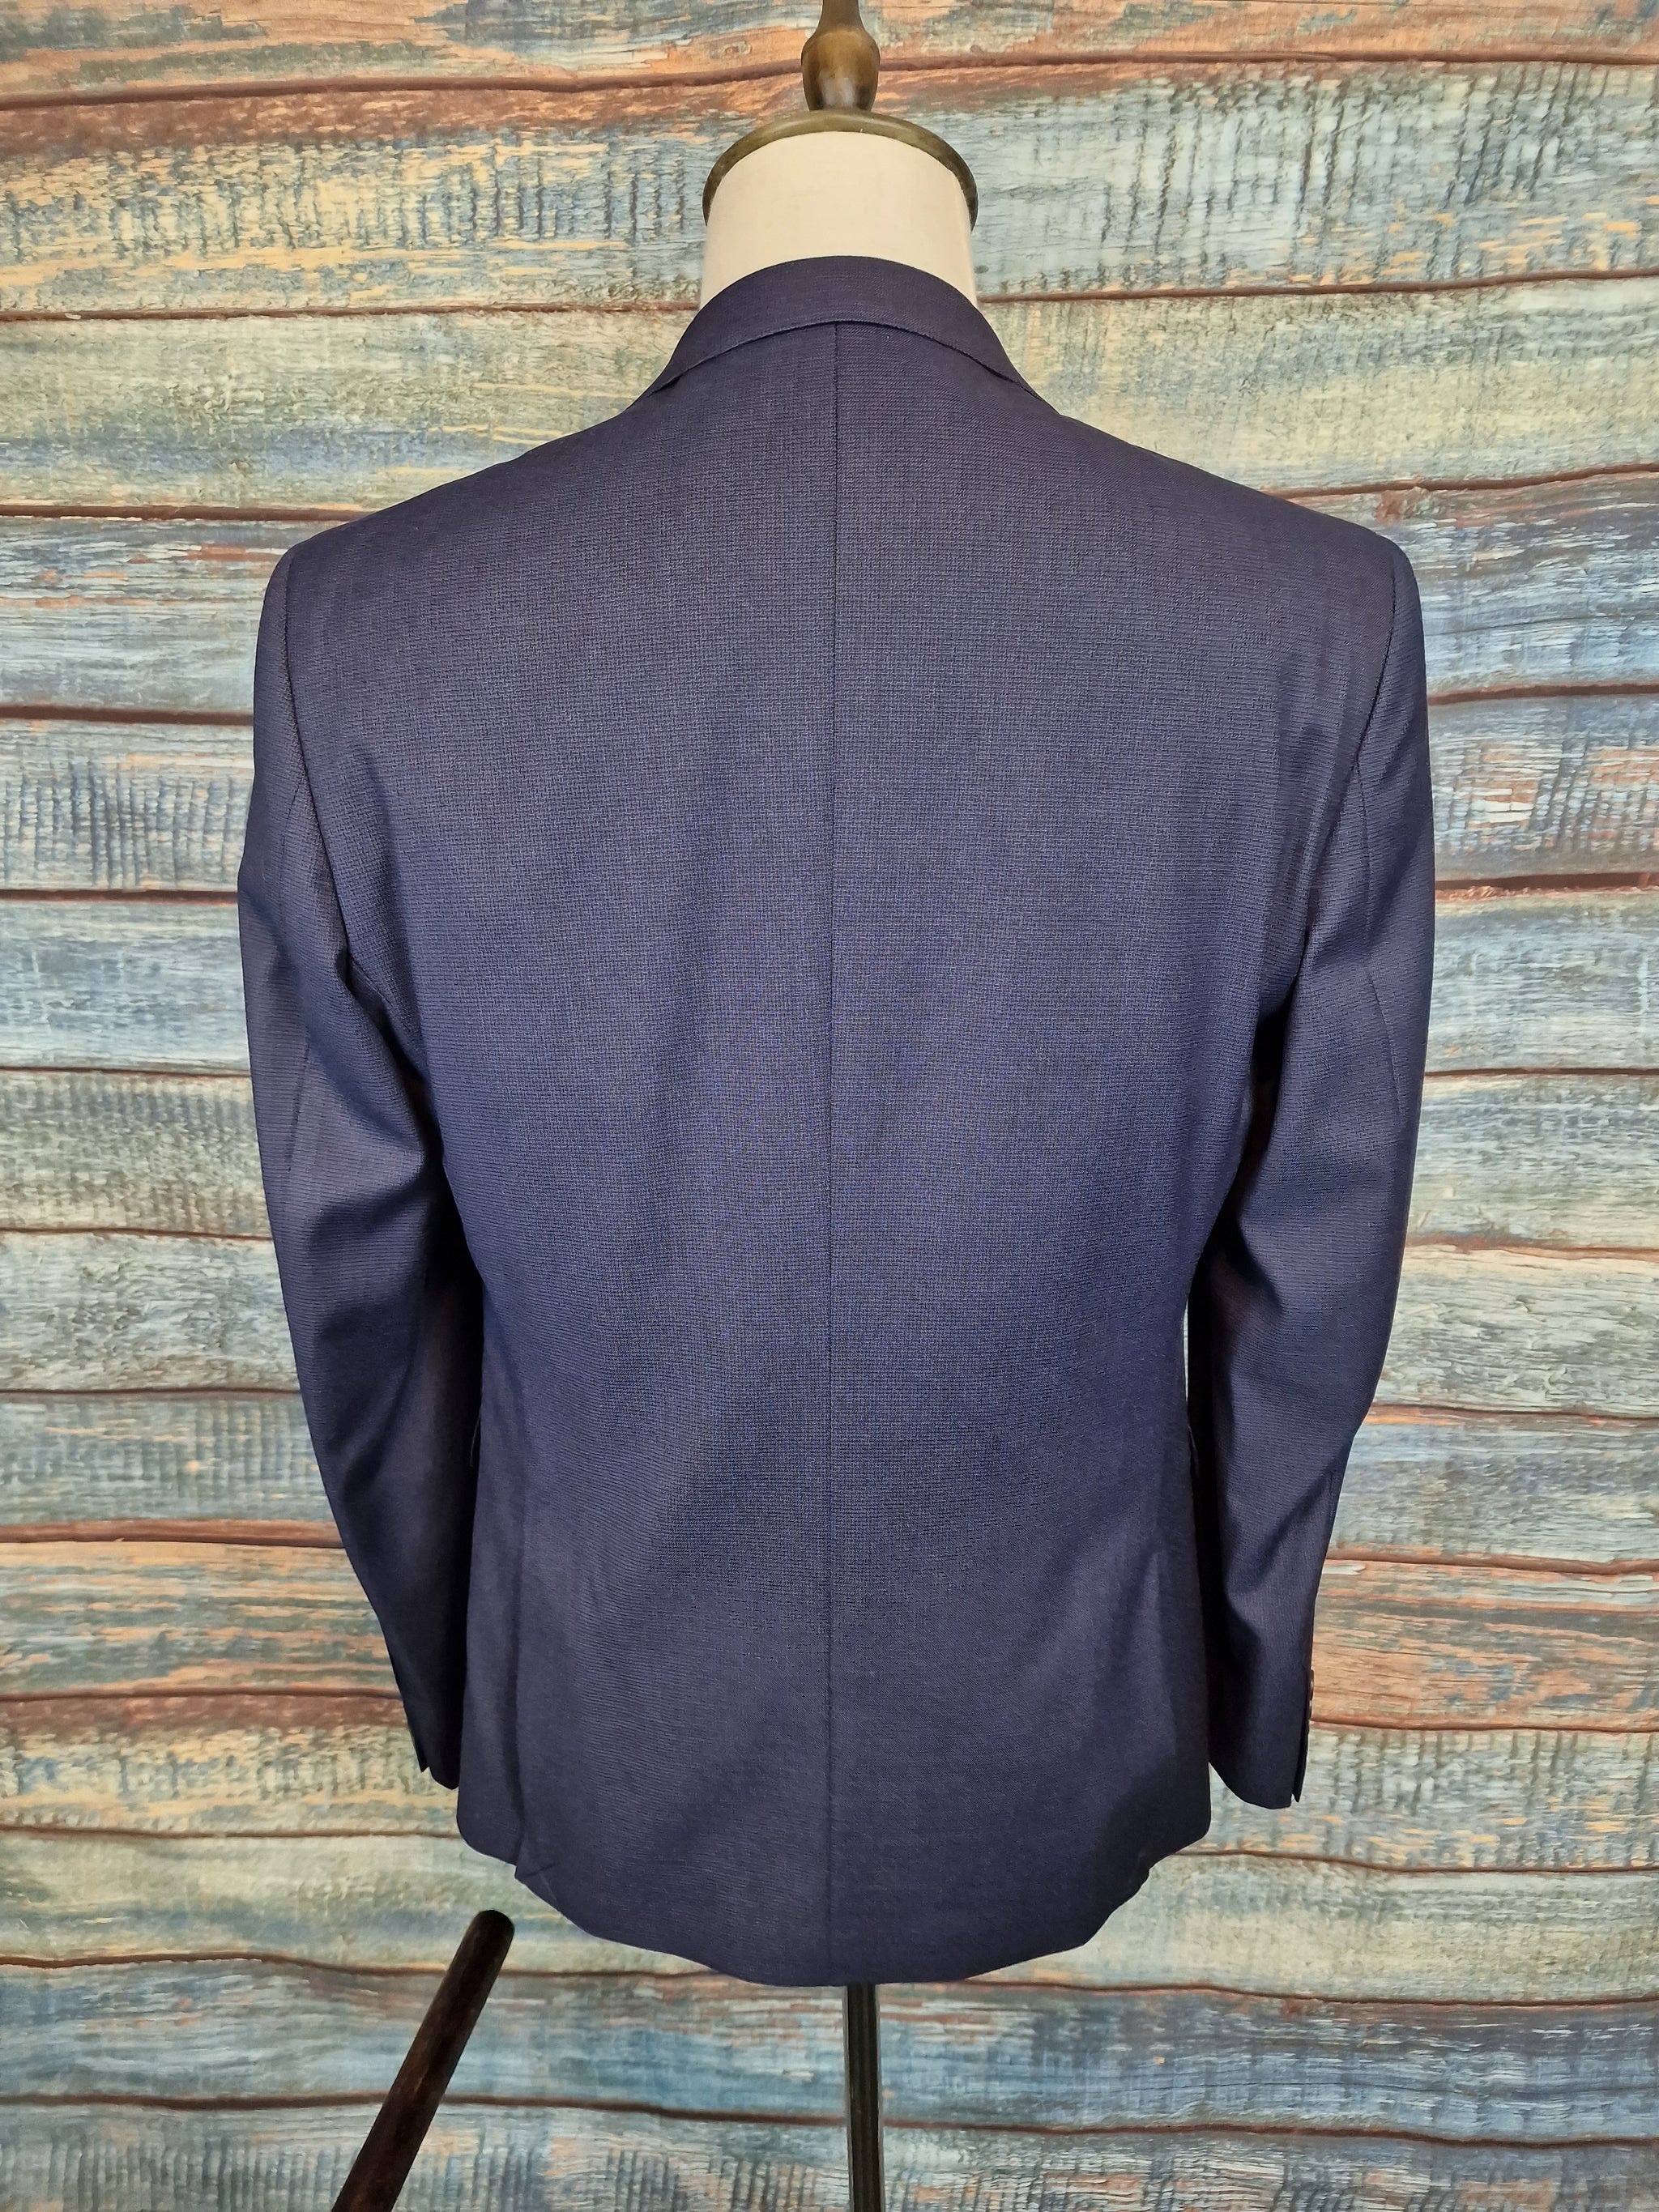 Remus Uomo Slim Fit blue micro check 3 Piece Suit